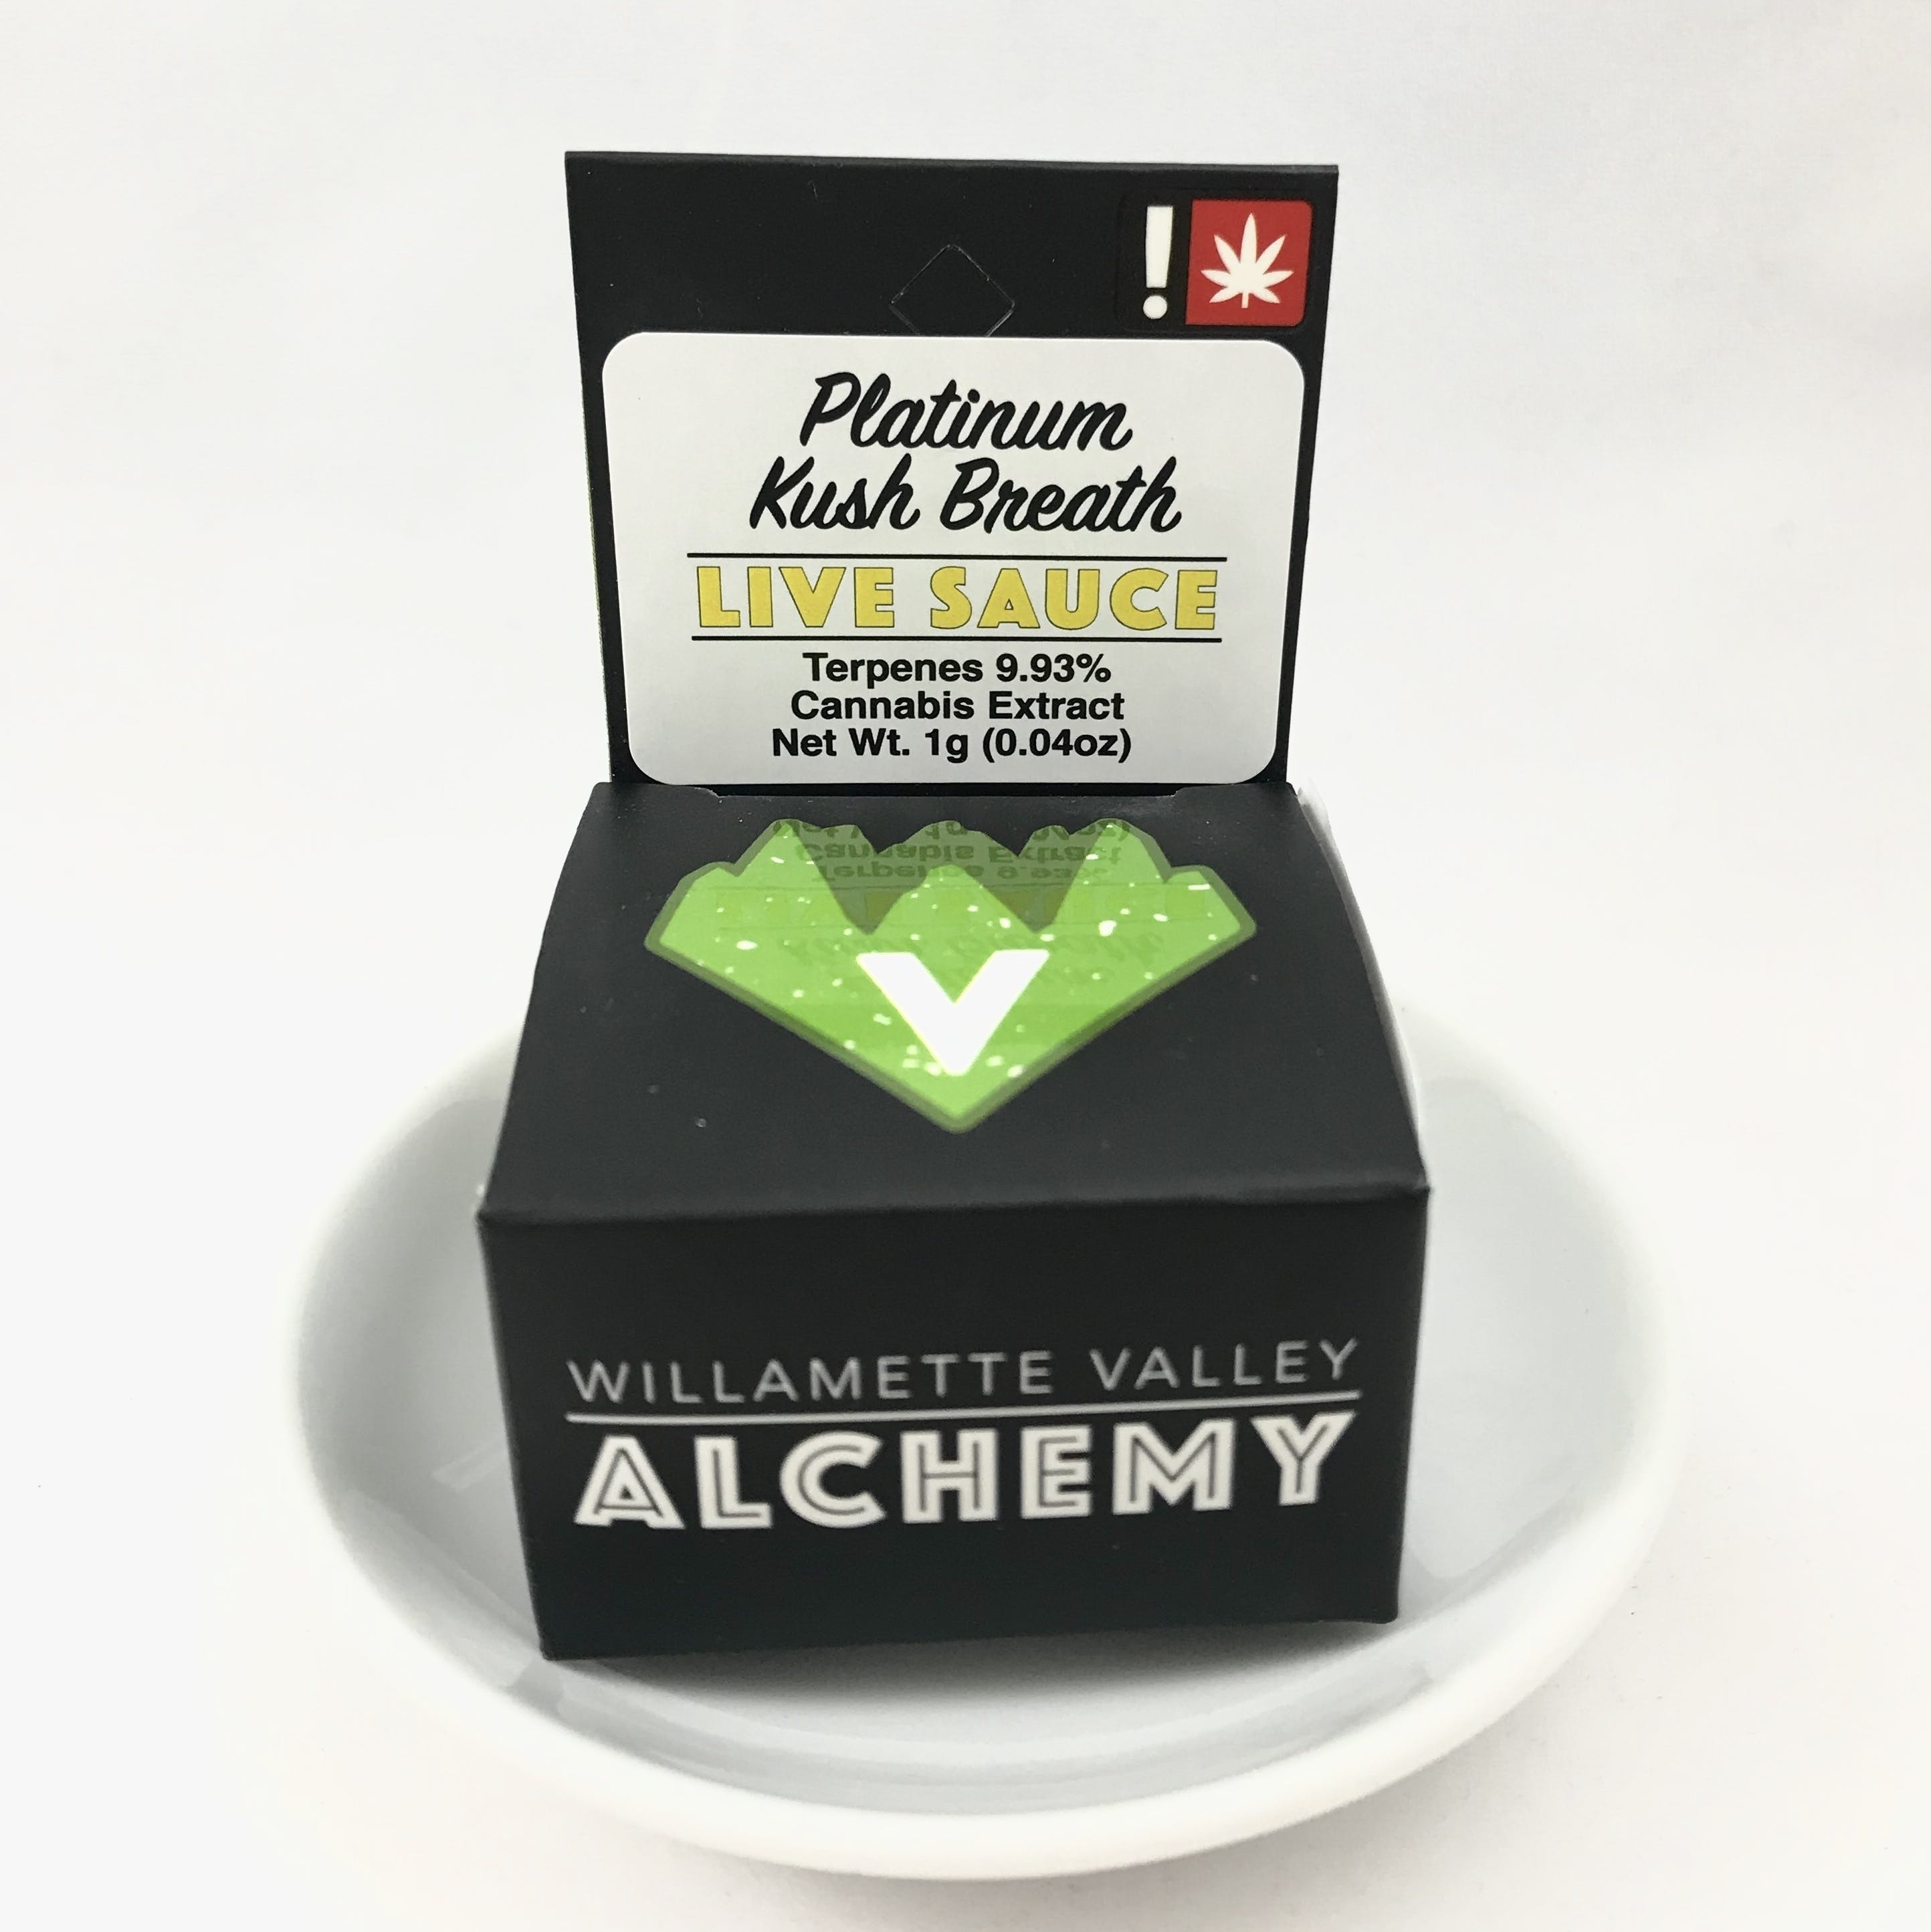 WILLAMETTE VALLEY ALCHEMY- Platinum Kush Breath Live Sauce